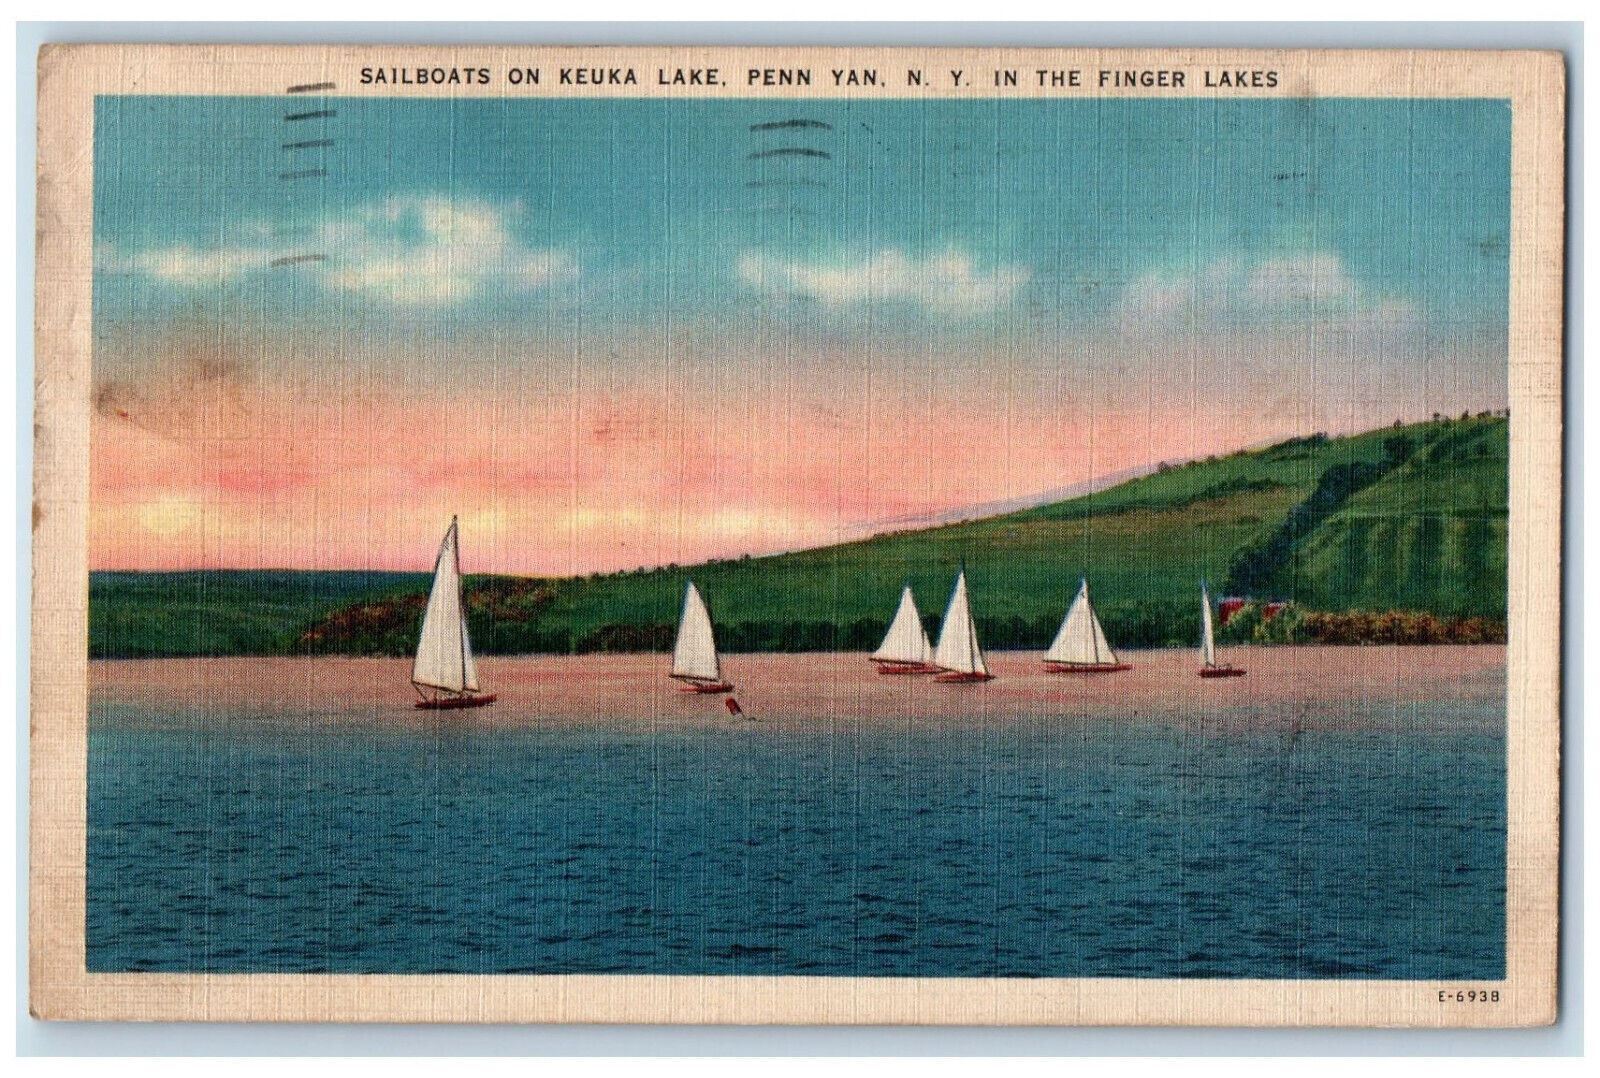 1945 Sailboats on Keuka Lake In Finger Lakes Penn Yan New York NY Postcard